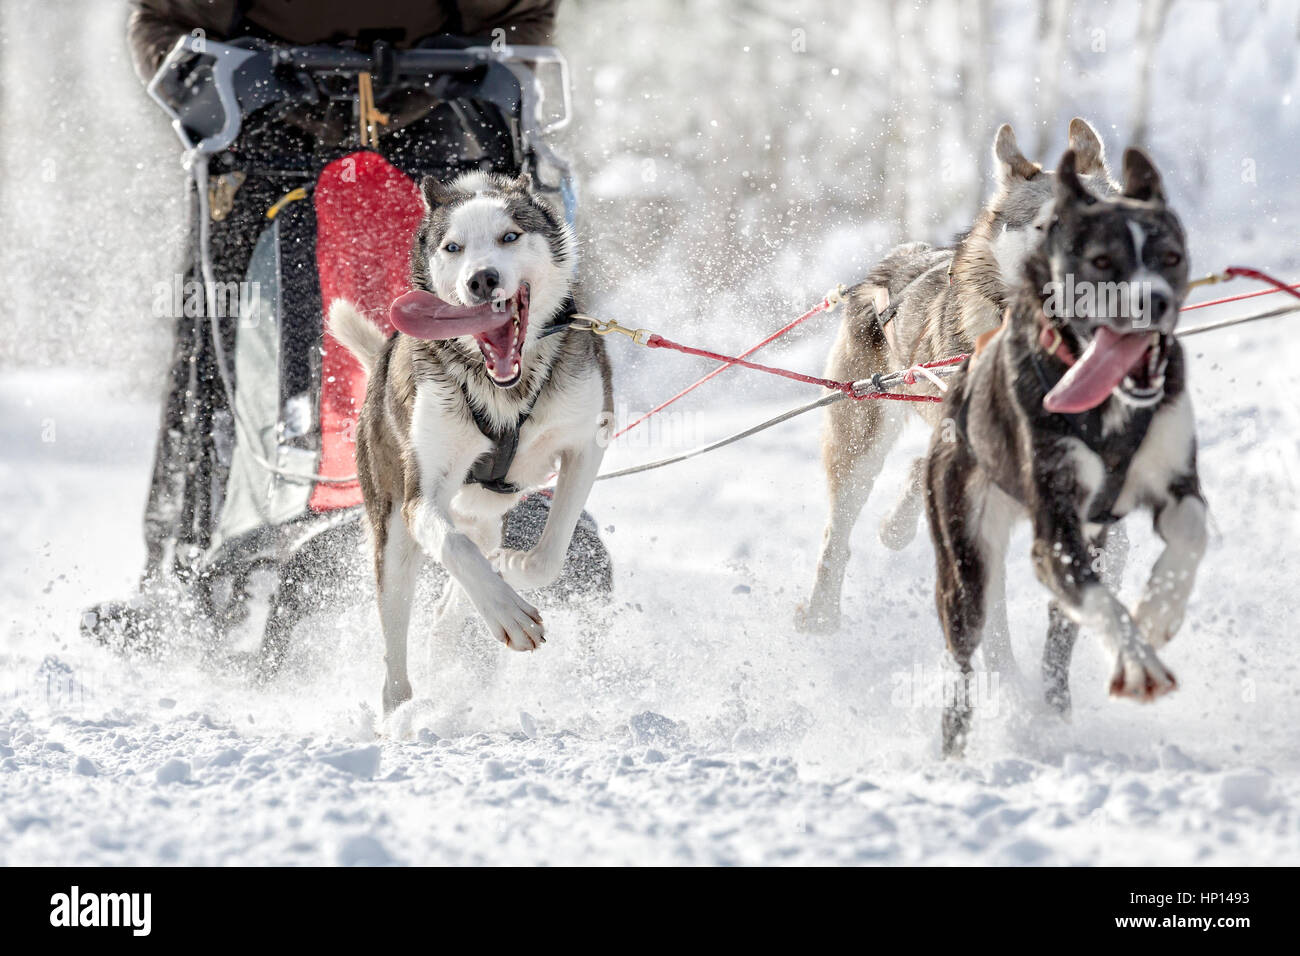 Dog sled race wintry landscape Stock Photo